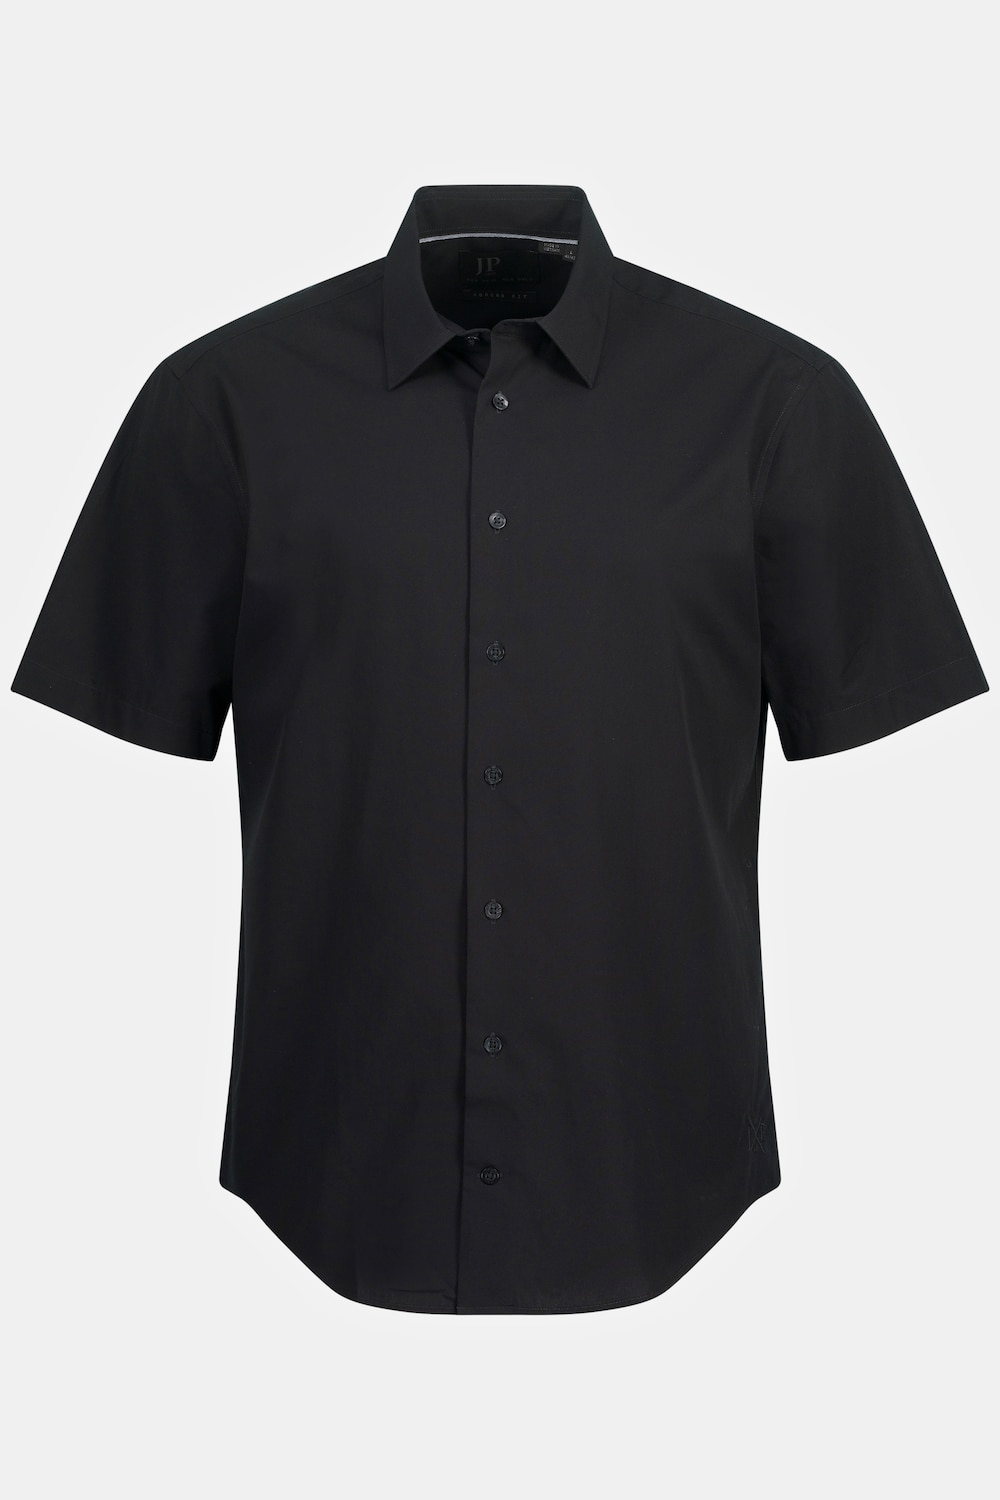 Grote Maten Zakelijk overhemd, Heren, zwart, Maat: 6XL, Katoen, JP1880